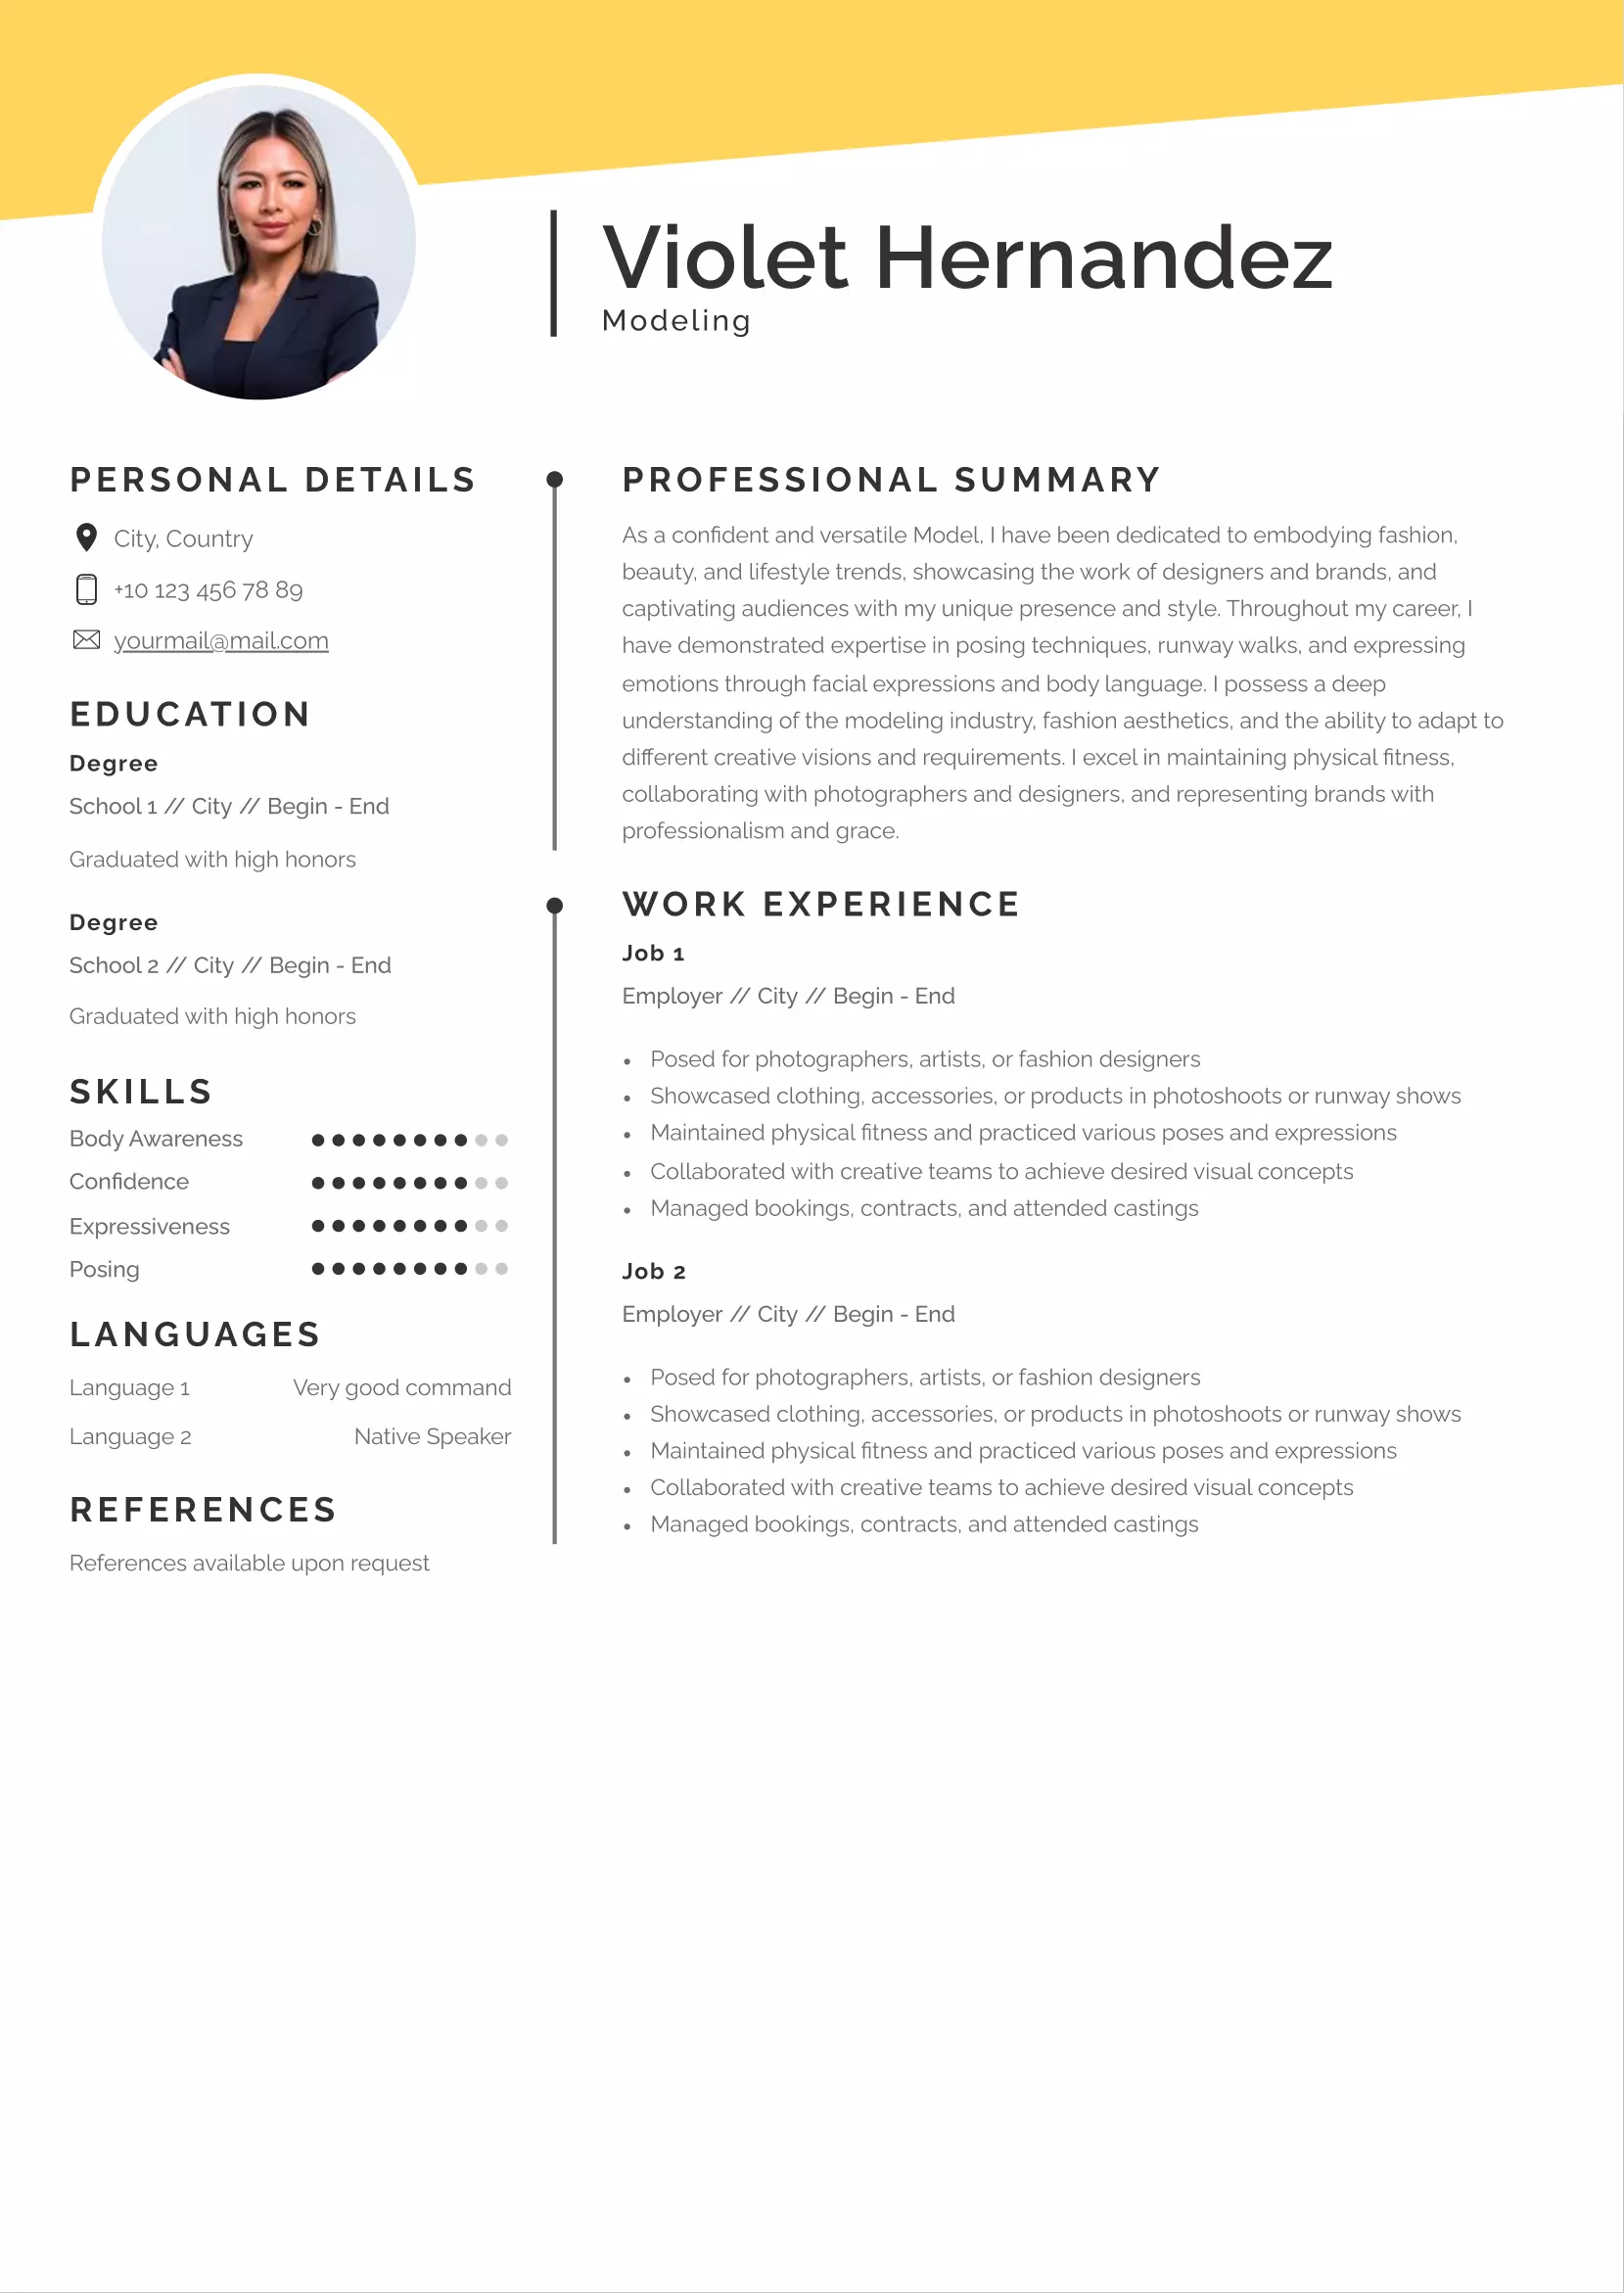 Modeling resume CV